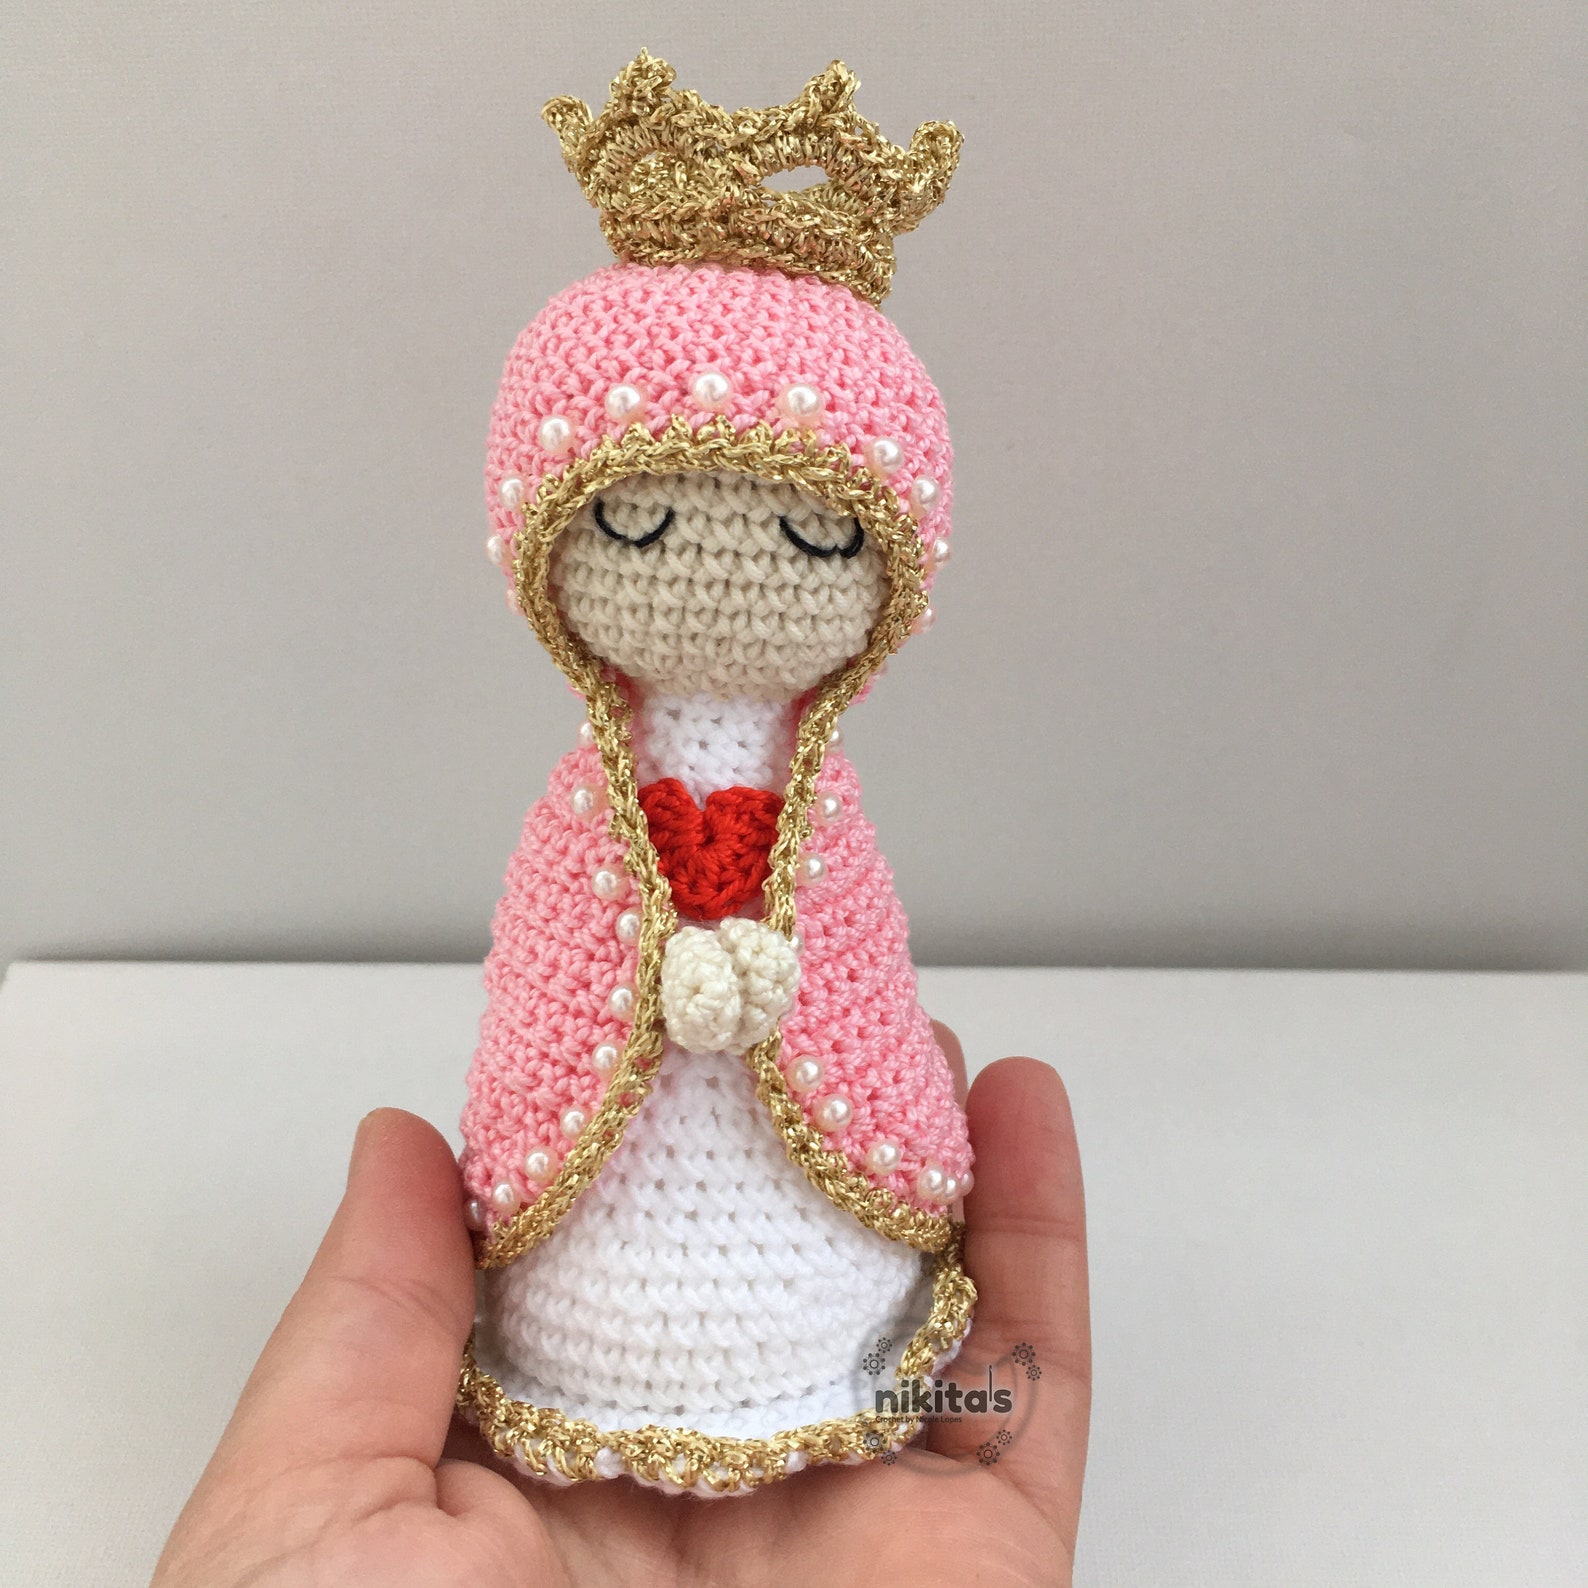 Virgin Mary Amigurumi Holy Mary In Crochet White Veil 678